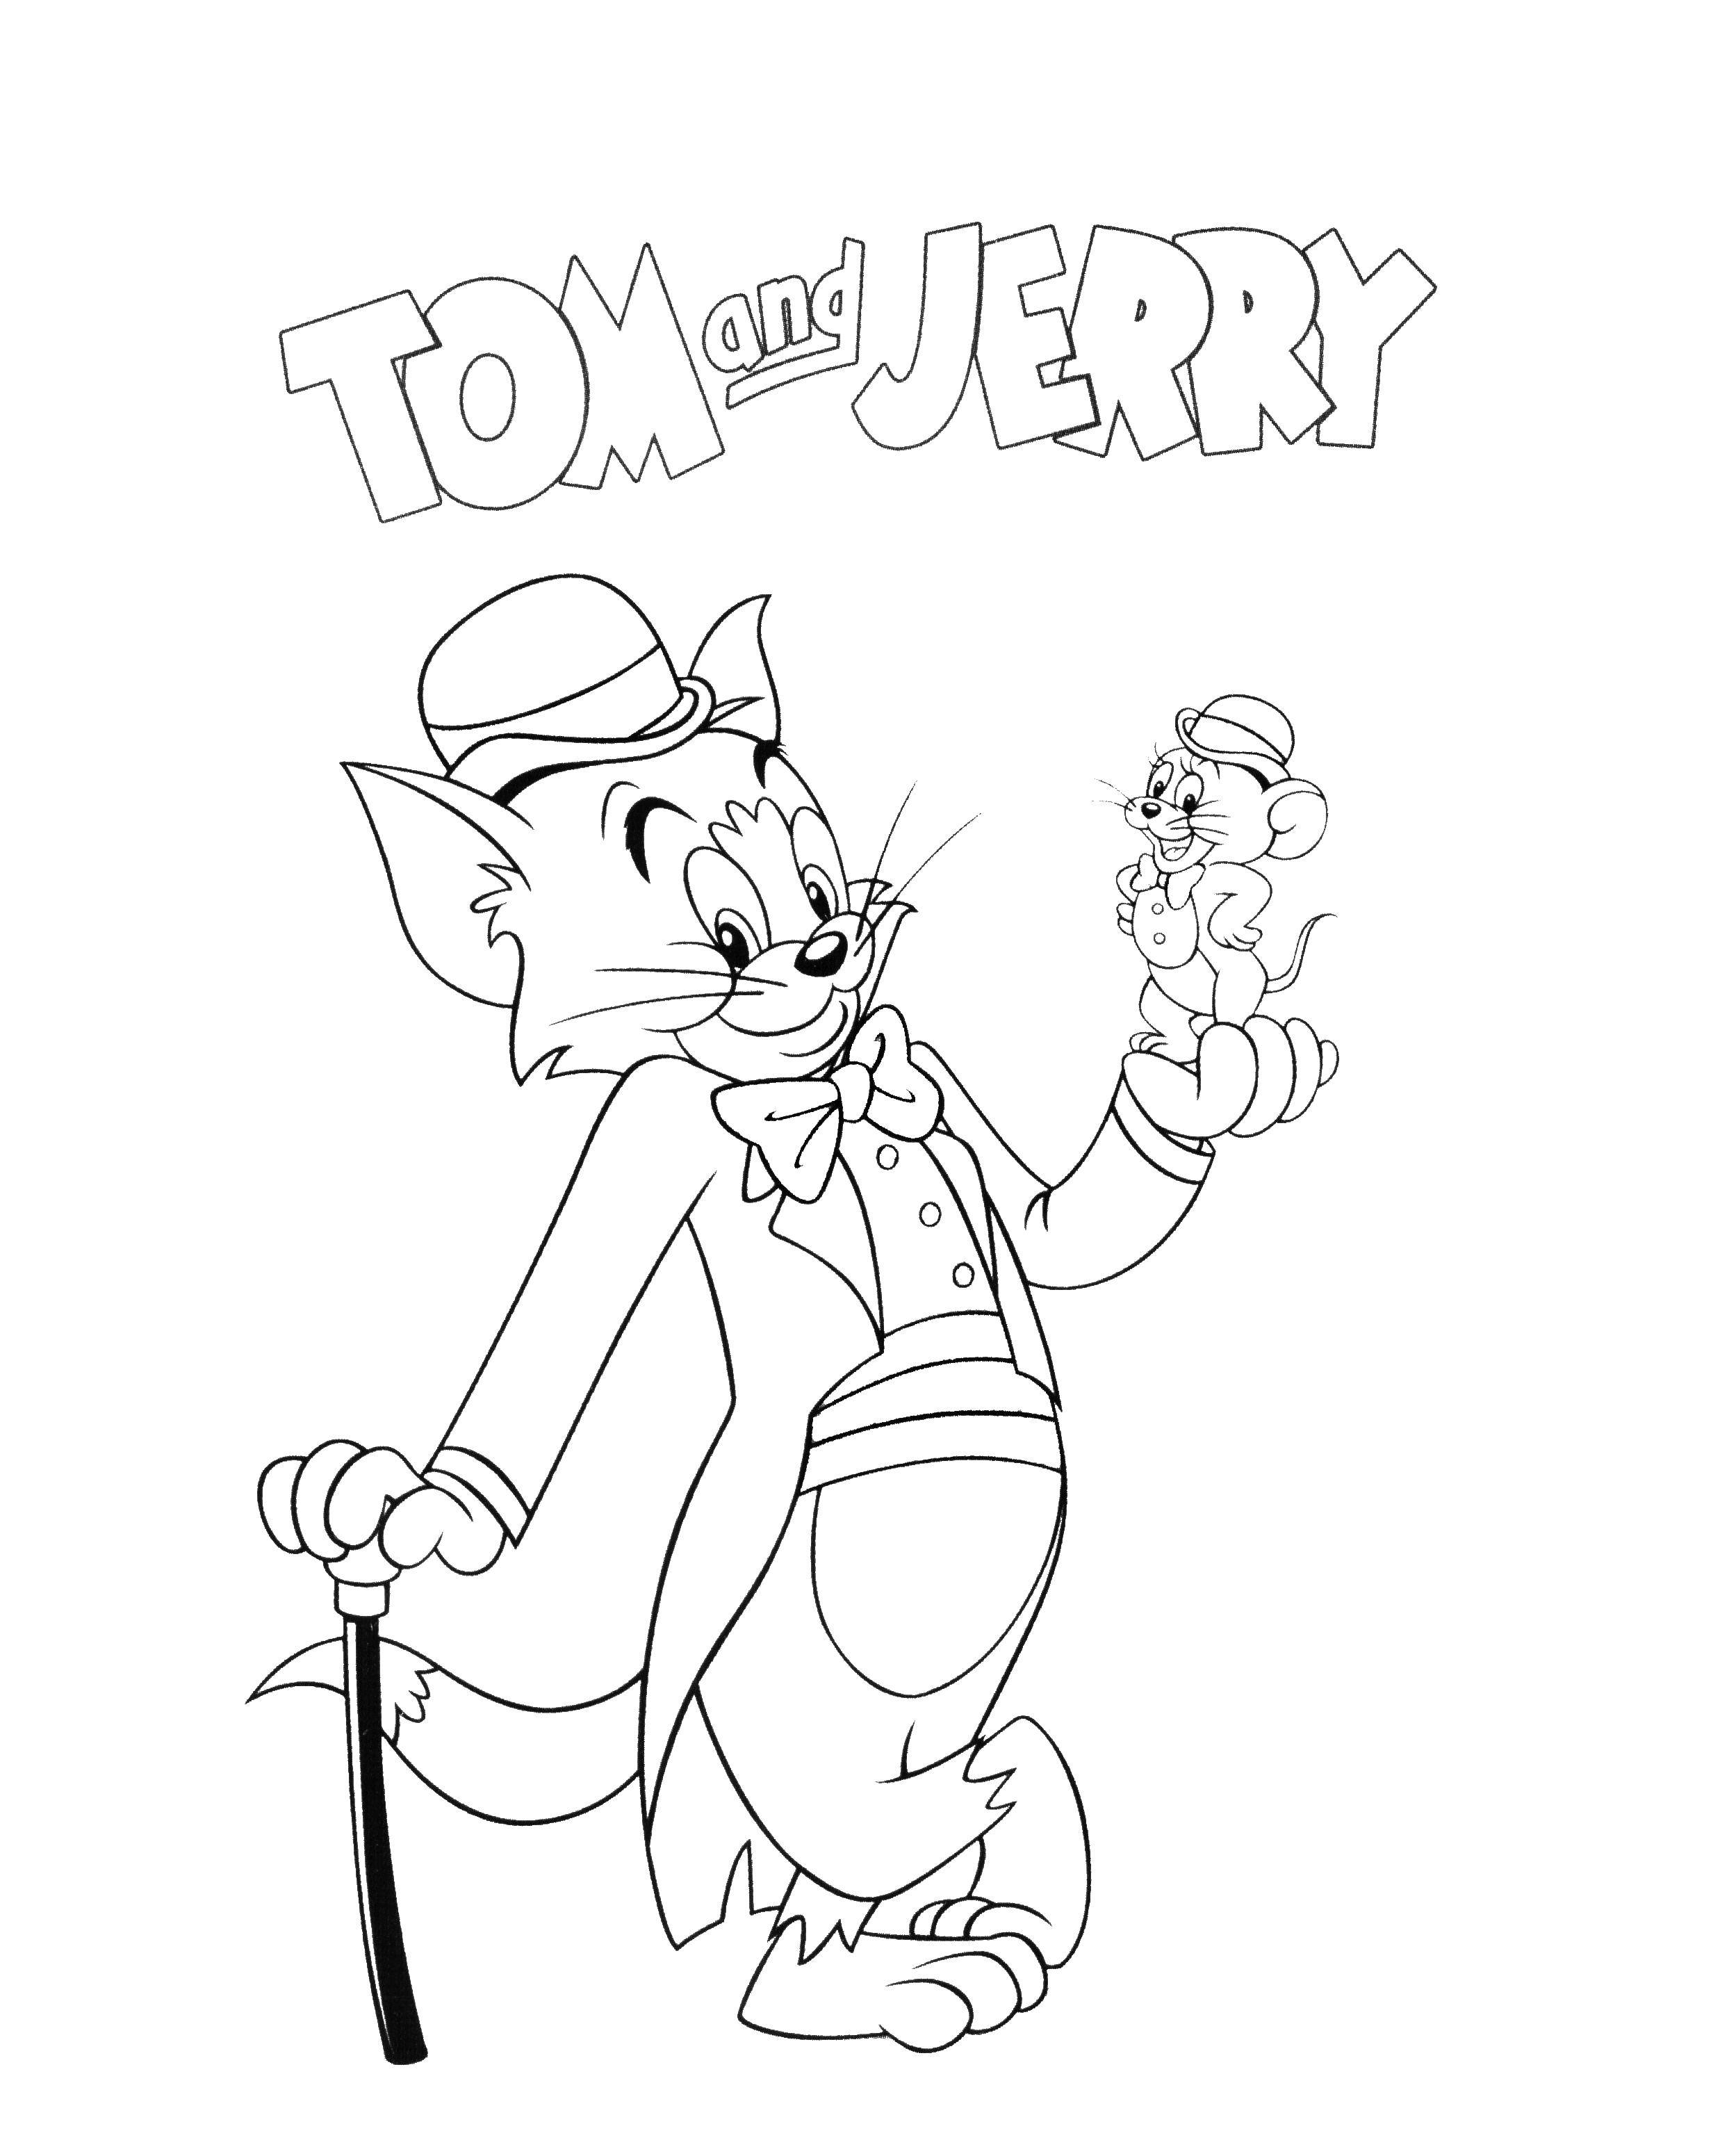 Раскраски из мультфильма Том и Джерри (Tom and Jerry) скачать